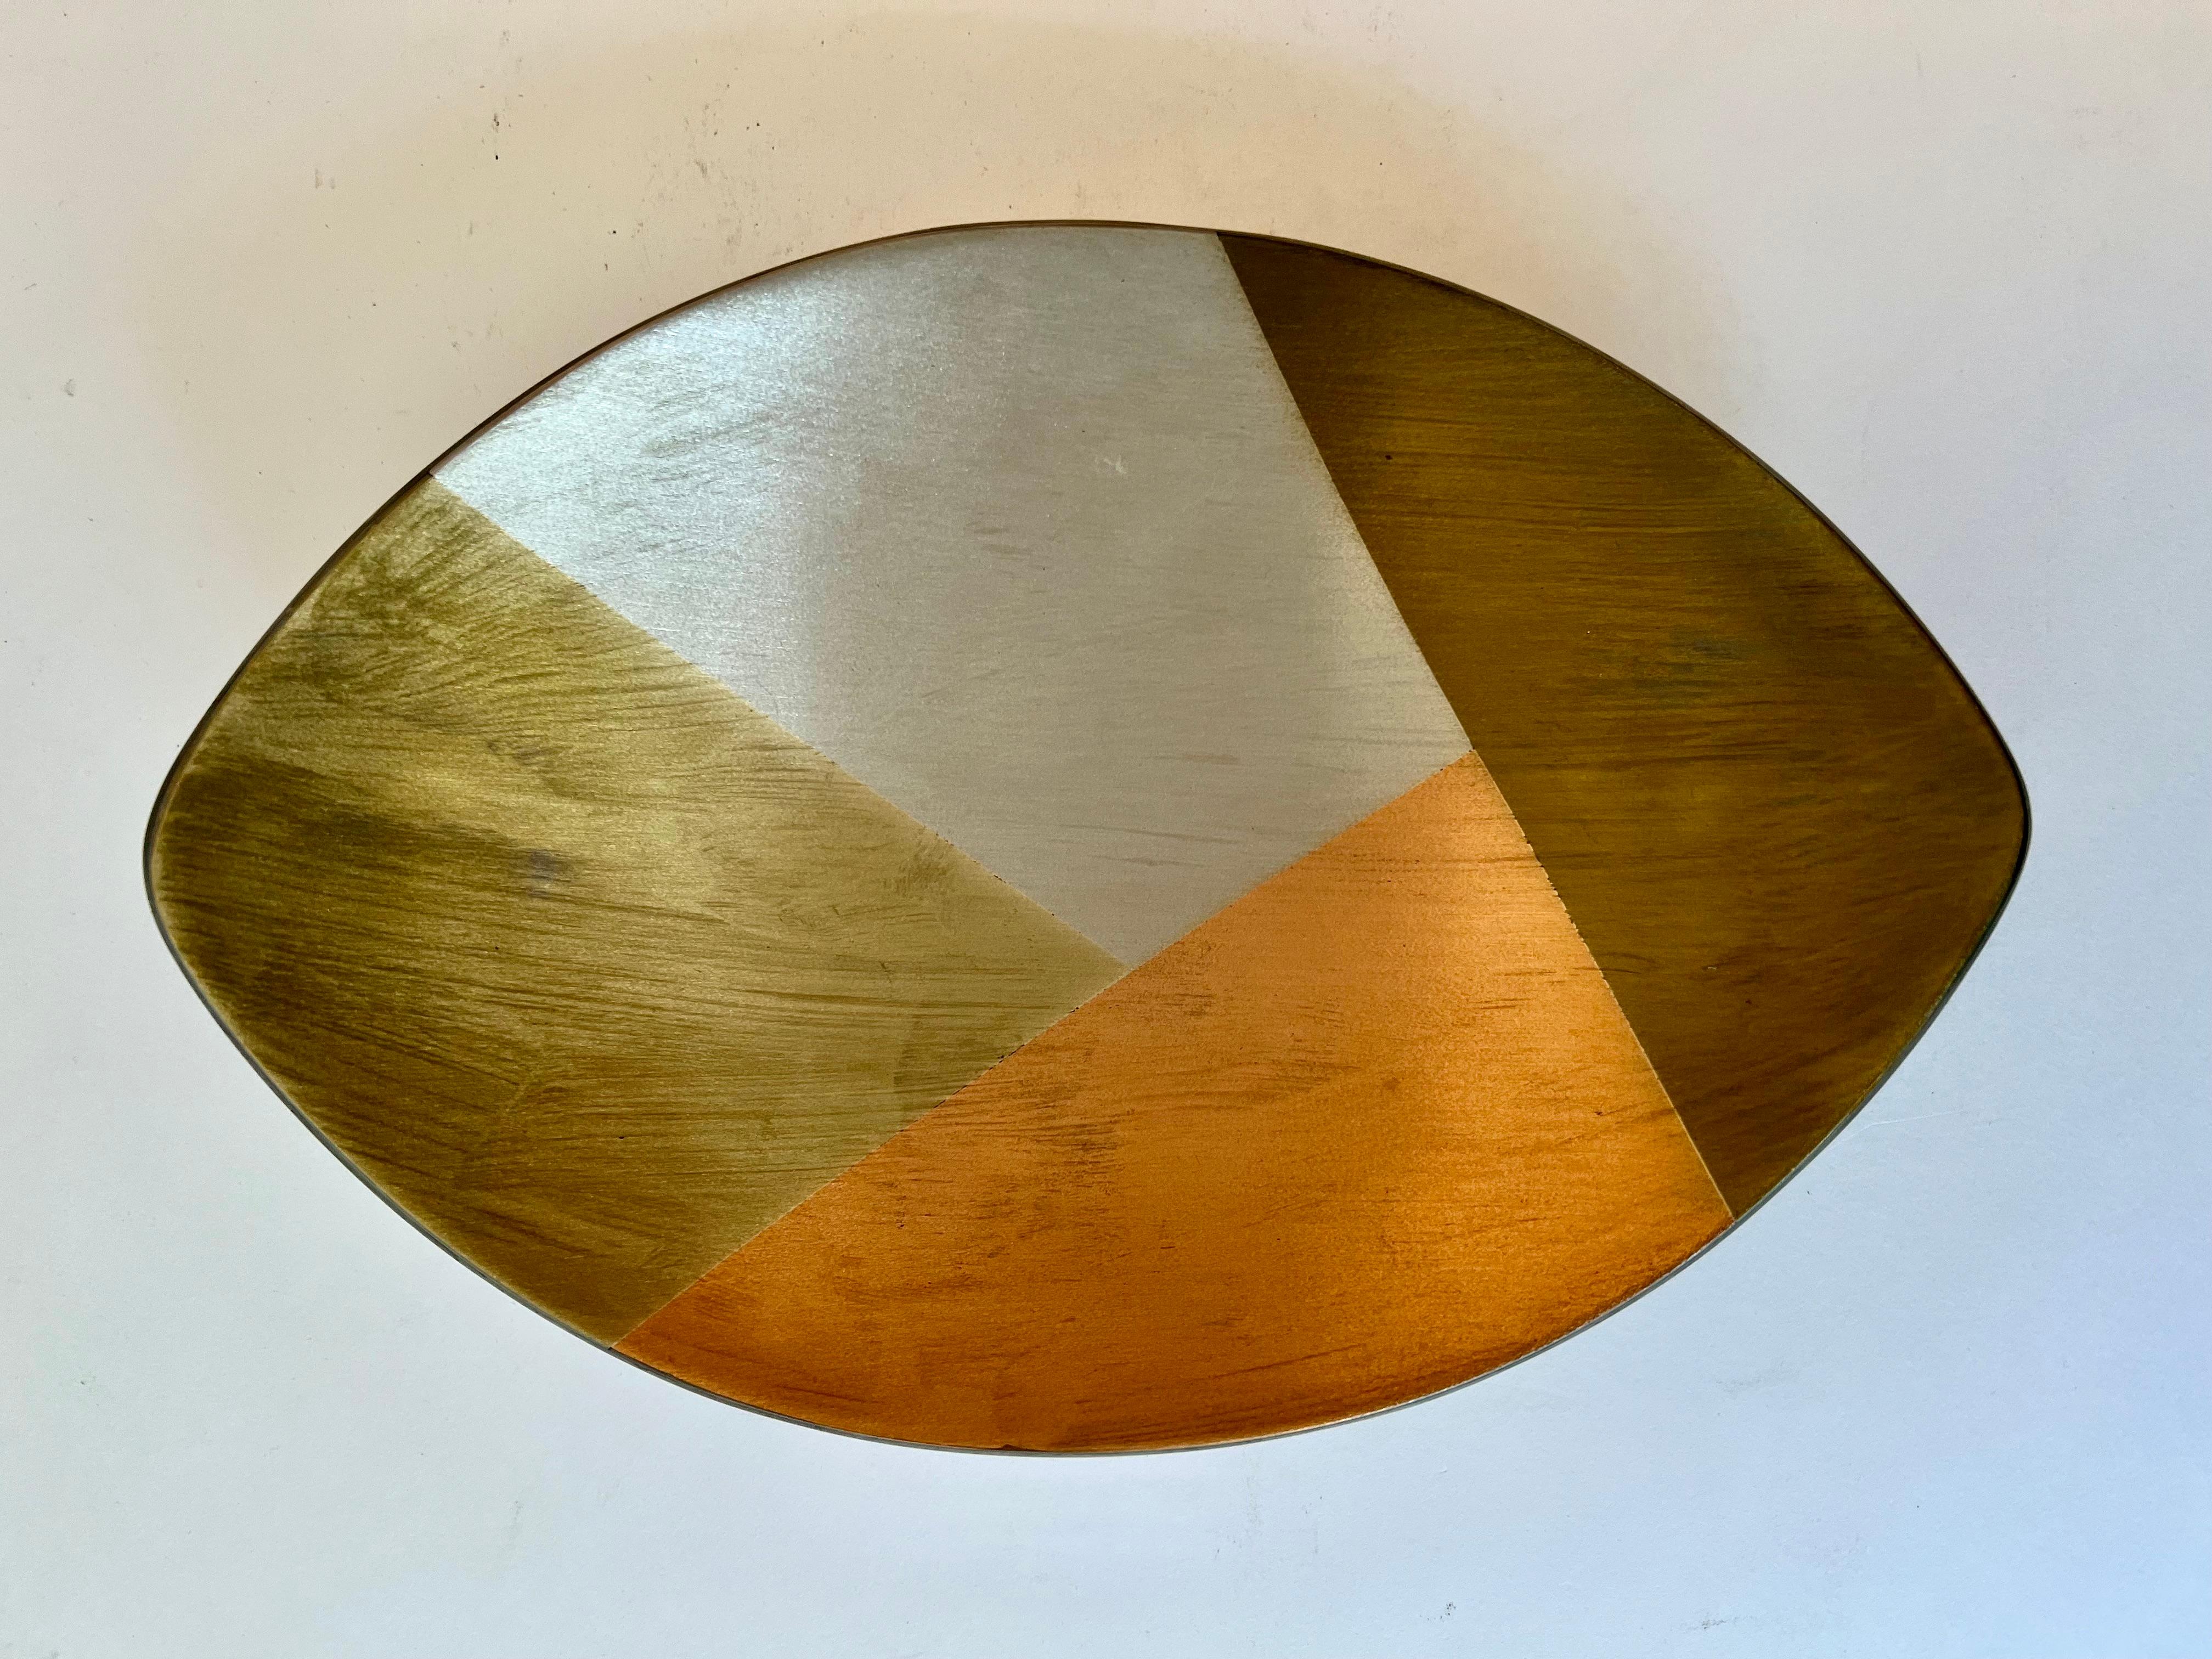 Eine ovale mexikanische Schale aus gemischtem Metall aus vier Metallen - Bronze, Messing, Kupfer und  Silber.  Die Oberfläche ist aus gebürstetem Gesamtmetall.  Die Füße sind aus Messing oder Kupfer und haben die Form einer runden Kugel.  

Ein sehr